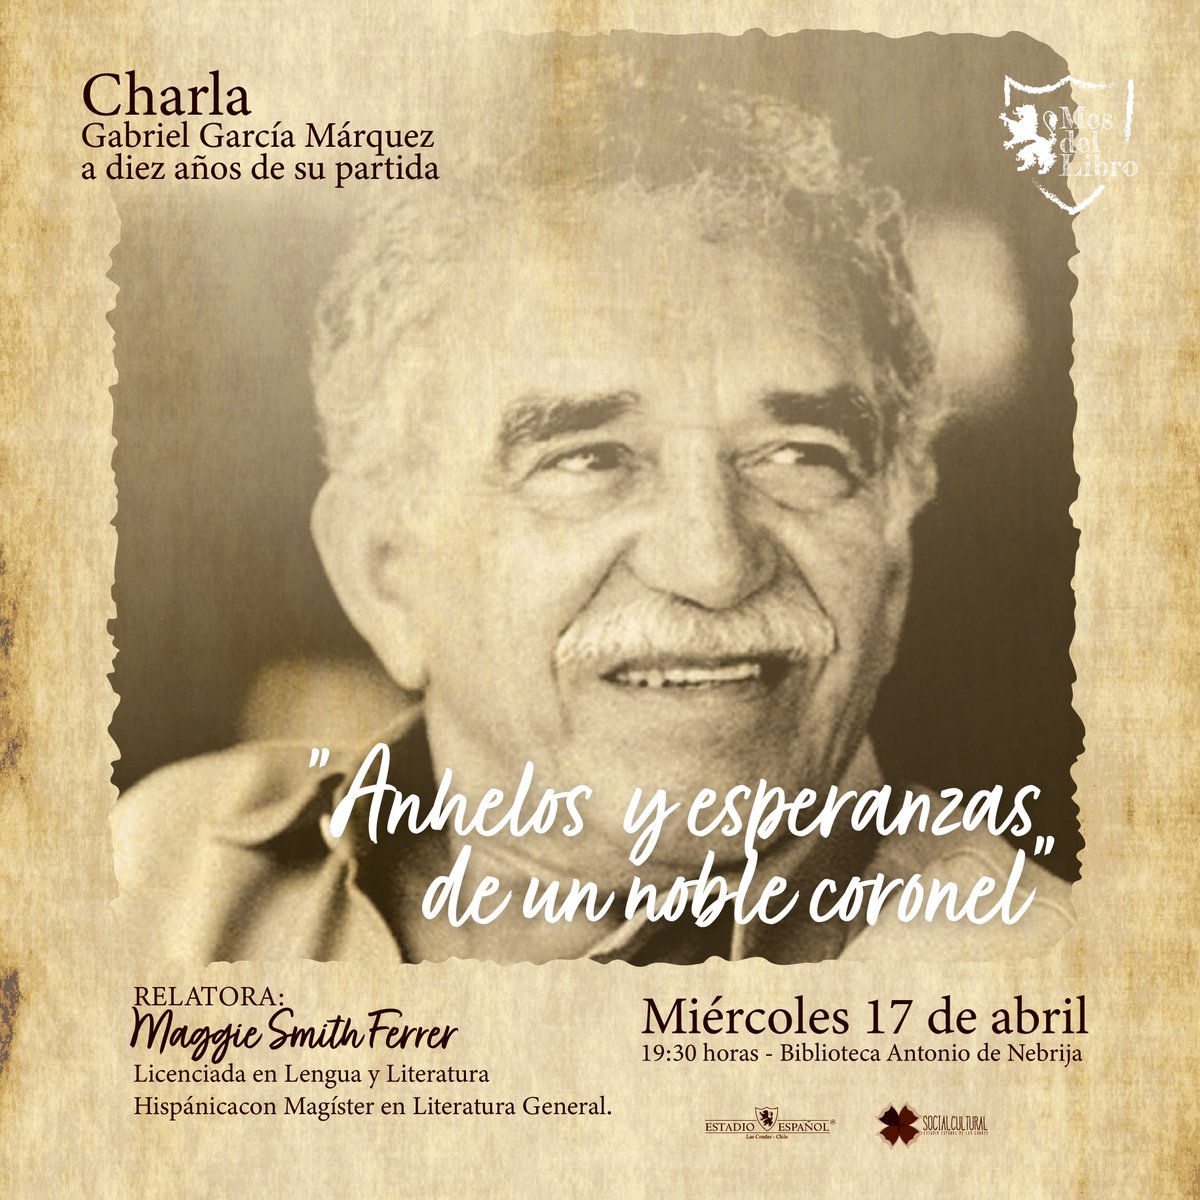 📚✨ A diez años de su partida, rendimos homenaje a Gabriel García Márquez. Invitamos a socios e invitados a la charla “Gabriel García Márquez, a diez años de su partida”. El miércoles 17 de abril a las 19:30 horas en la Biblioteca 'Antonio de Nebrija'. 🌟 #EstadioEspañol